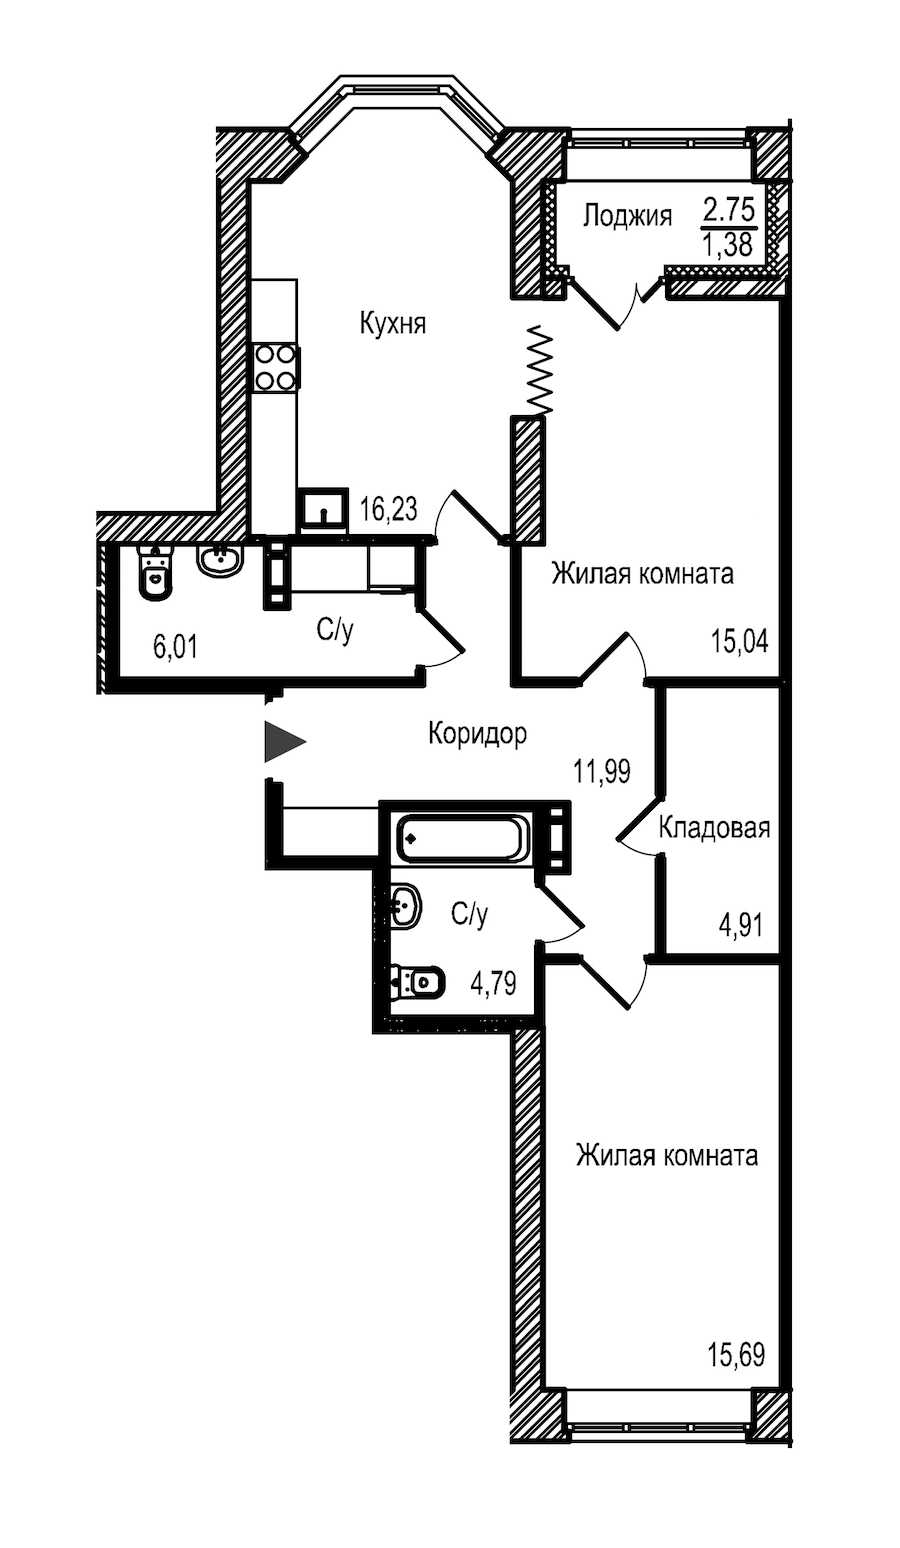 Двухкомнатная квартира в Строительный трест: площадь 76.04 м2 , этаж: 11 – купить в Санкт-Петербурге